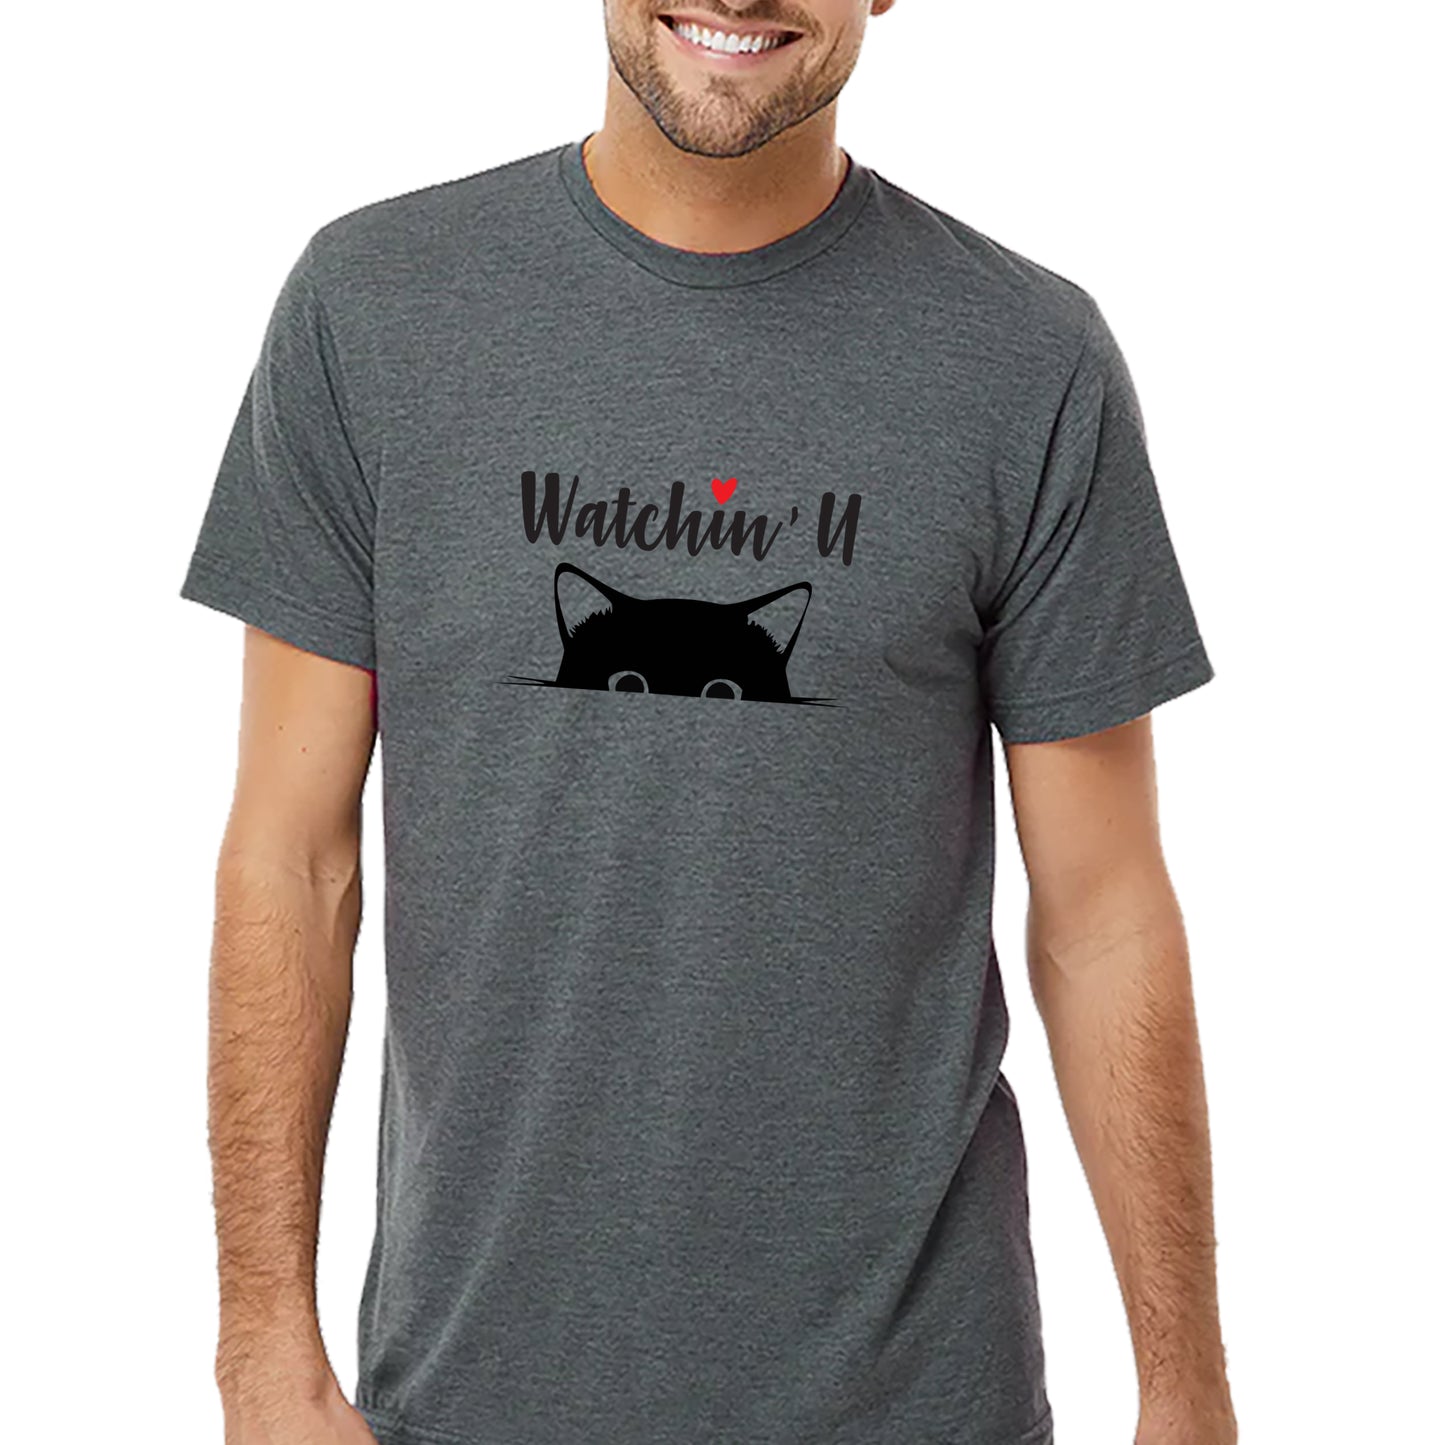 Cat Watchin' U T-shirt